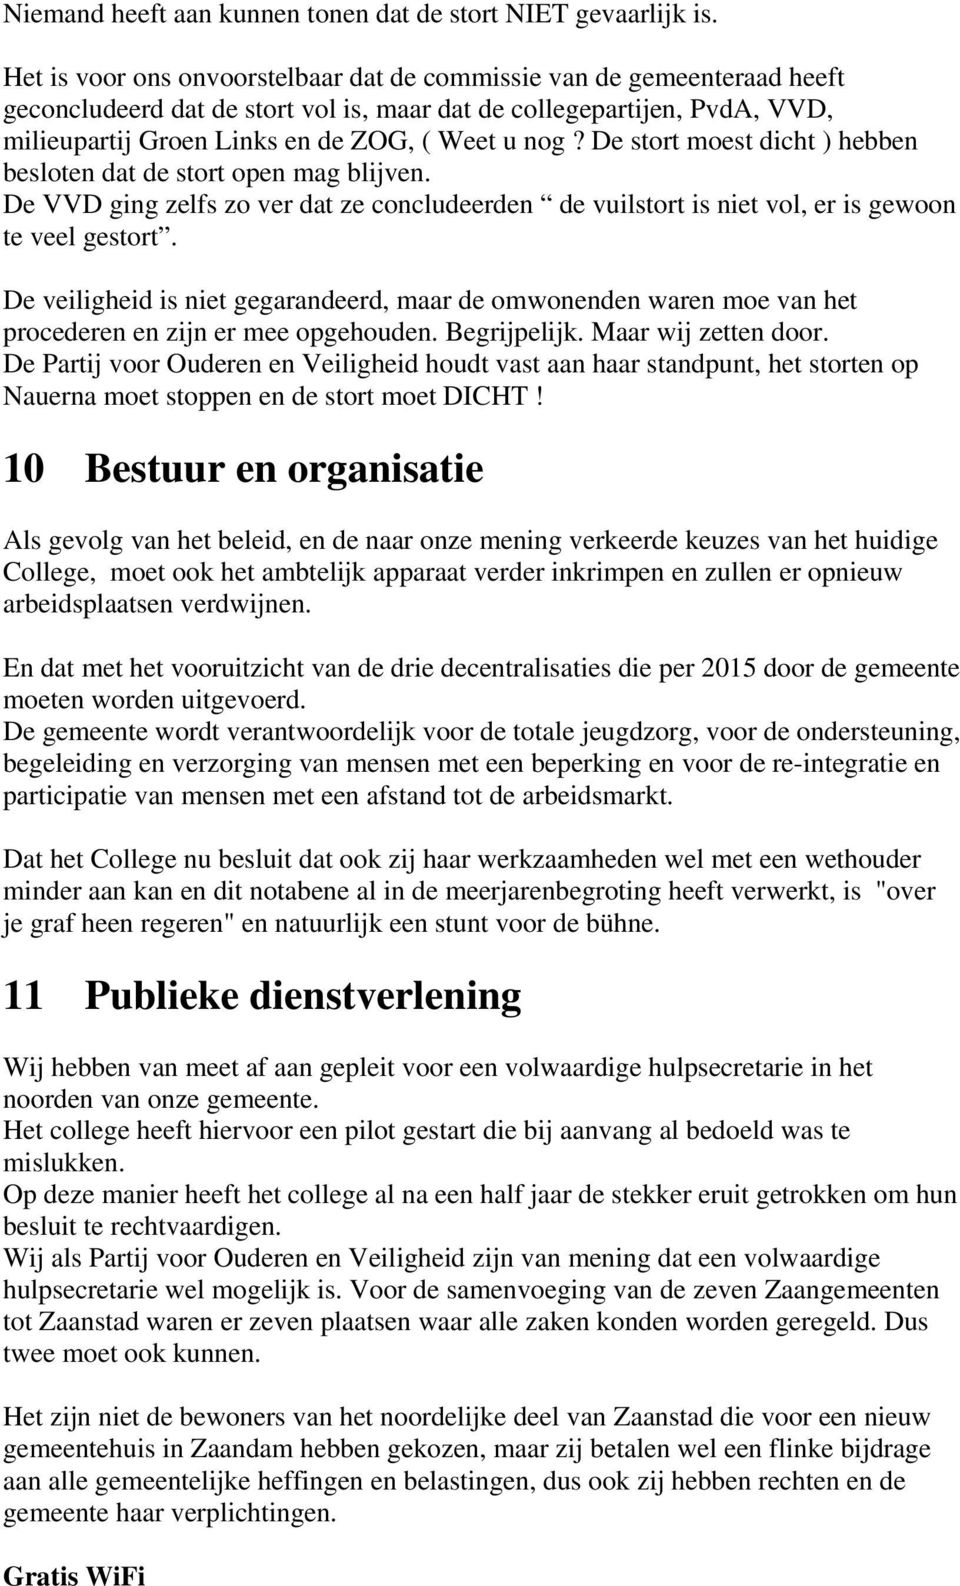 De stort moest dicht ) hebben besloten dat de stort open mag blijven. De VVD ging zelfs zo ver dat ze concludeerden de vuilstort is niet vol, er is gewoon te veel gestort.